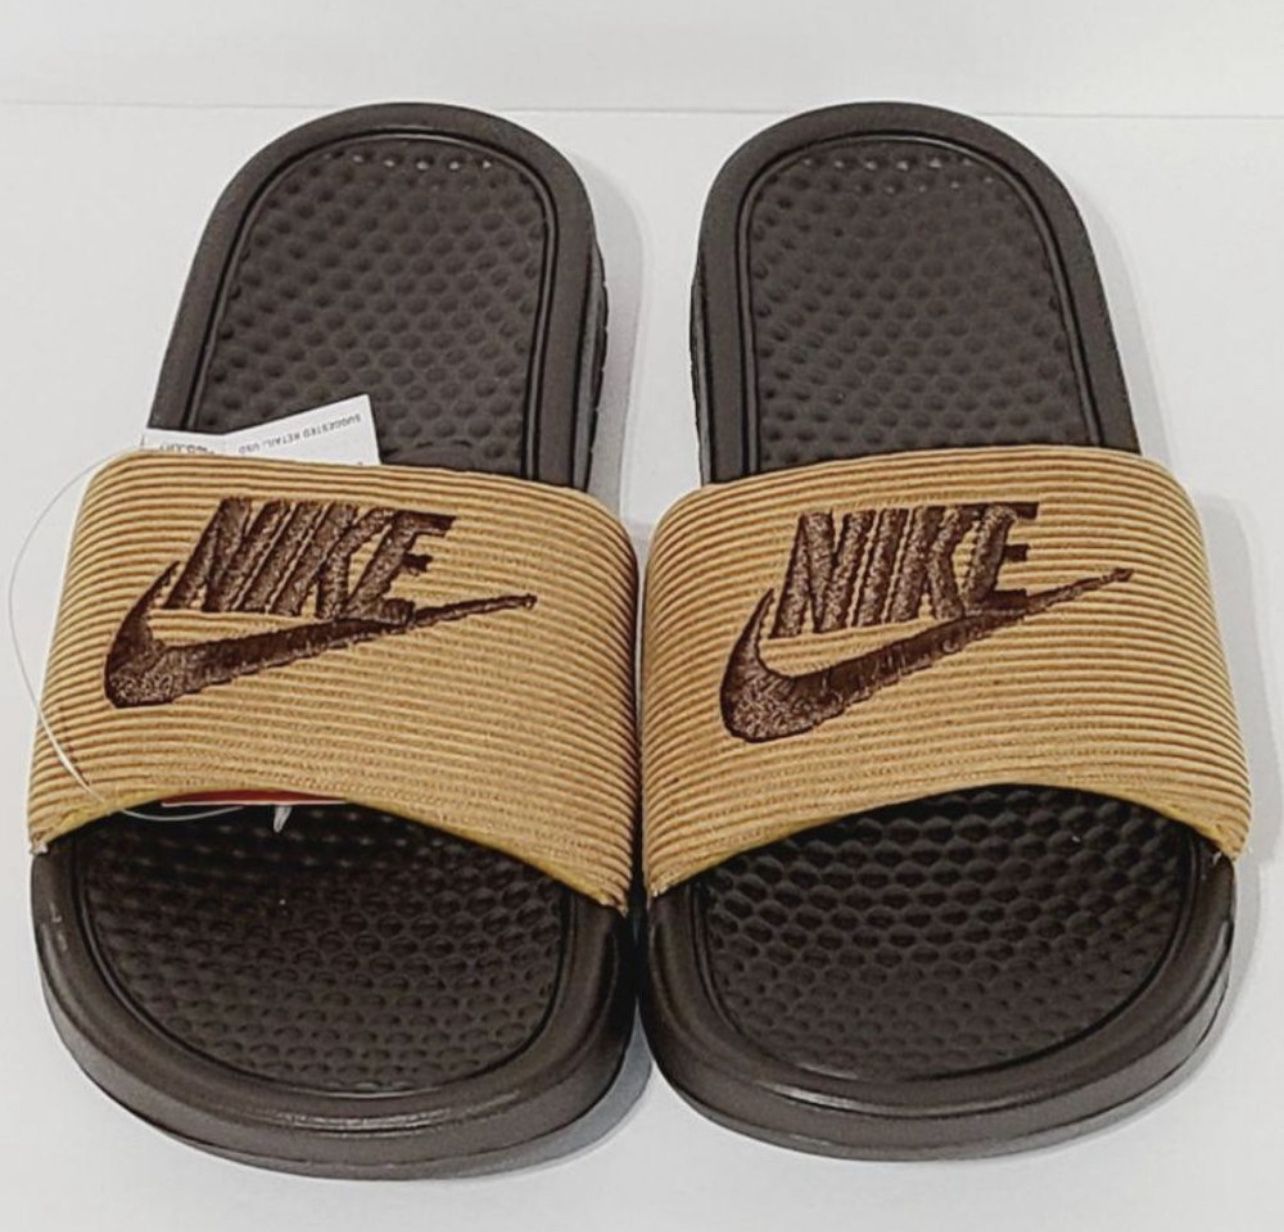 Nike Benassi JD SE LTR Corduroy Slides CK0644-200 Size Brown for Sale in UT - OfferUp